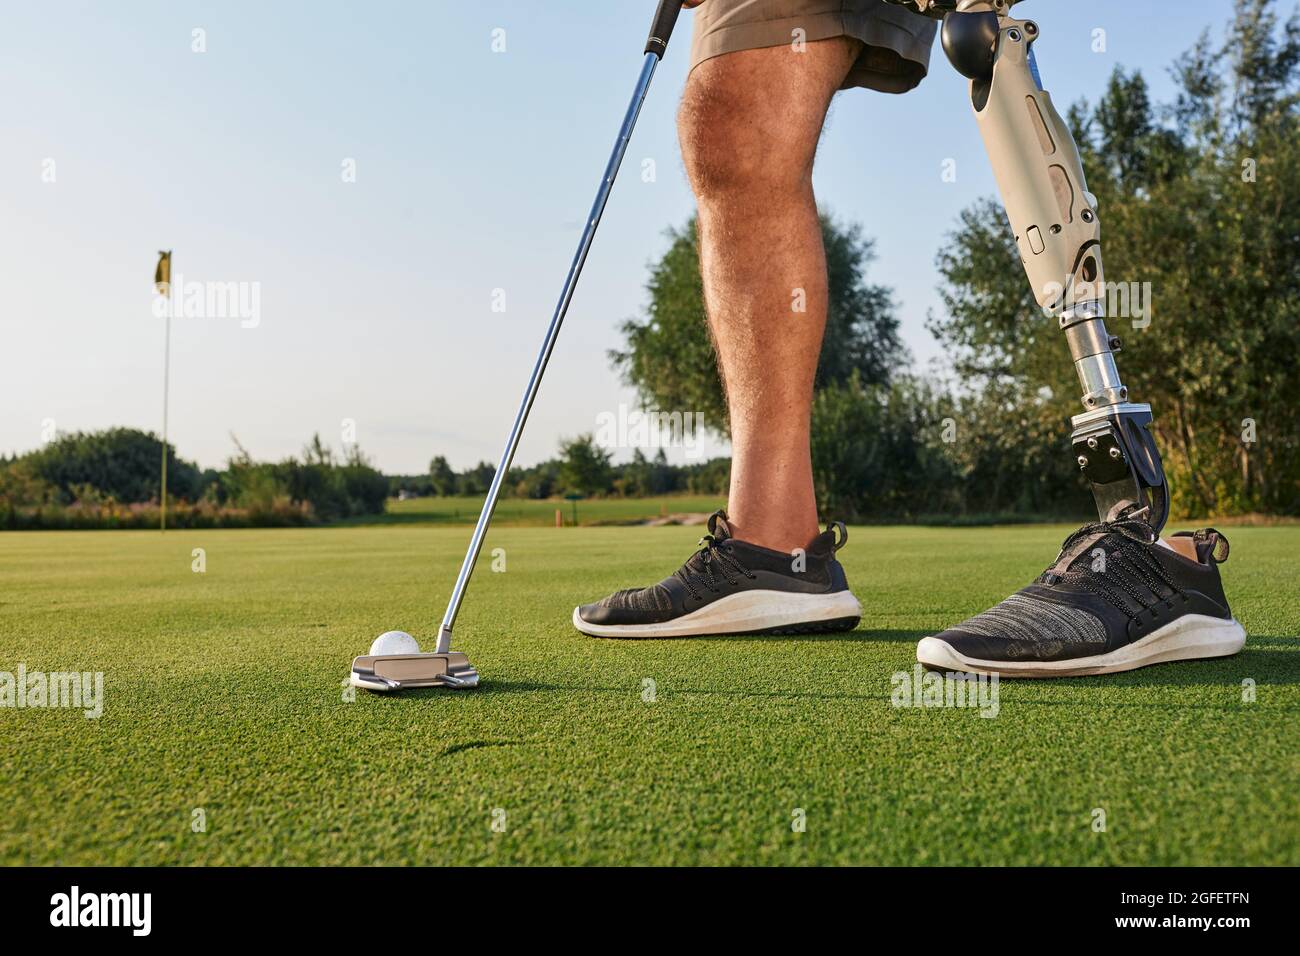 Professioneller Golfspieler mit Beinprothese, der während des Golfspiels mit Putter auf den Golfball trifft. Konzept der Willenskraft von Menschen mit Behinderungen im Sport Stockfoto